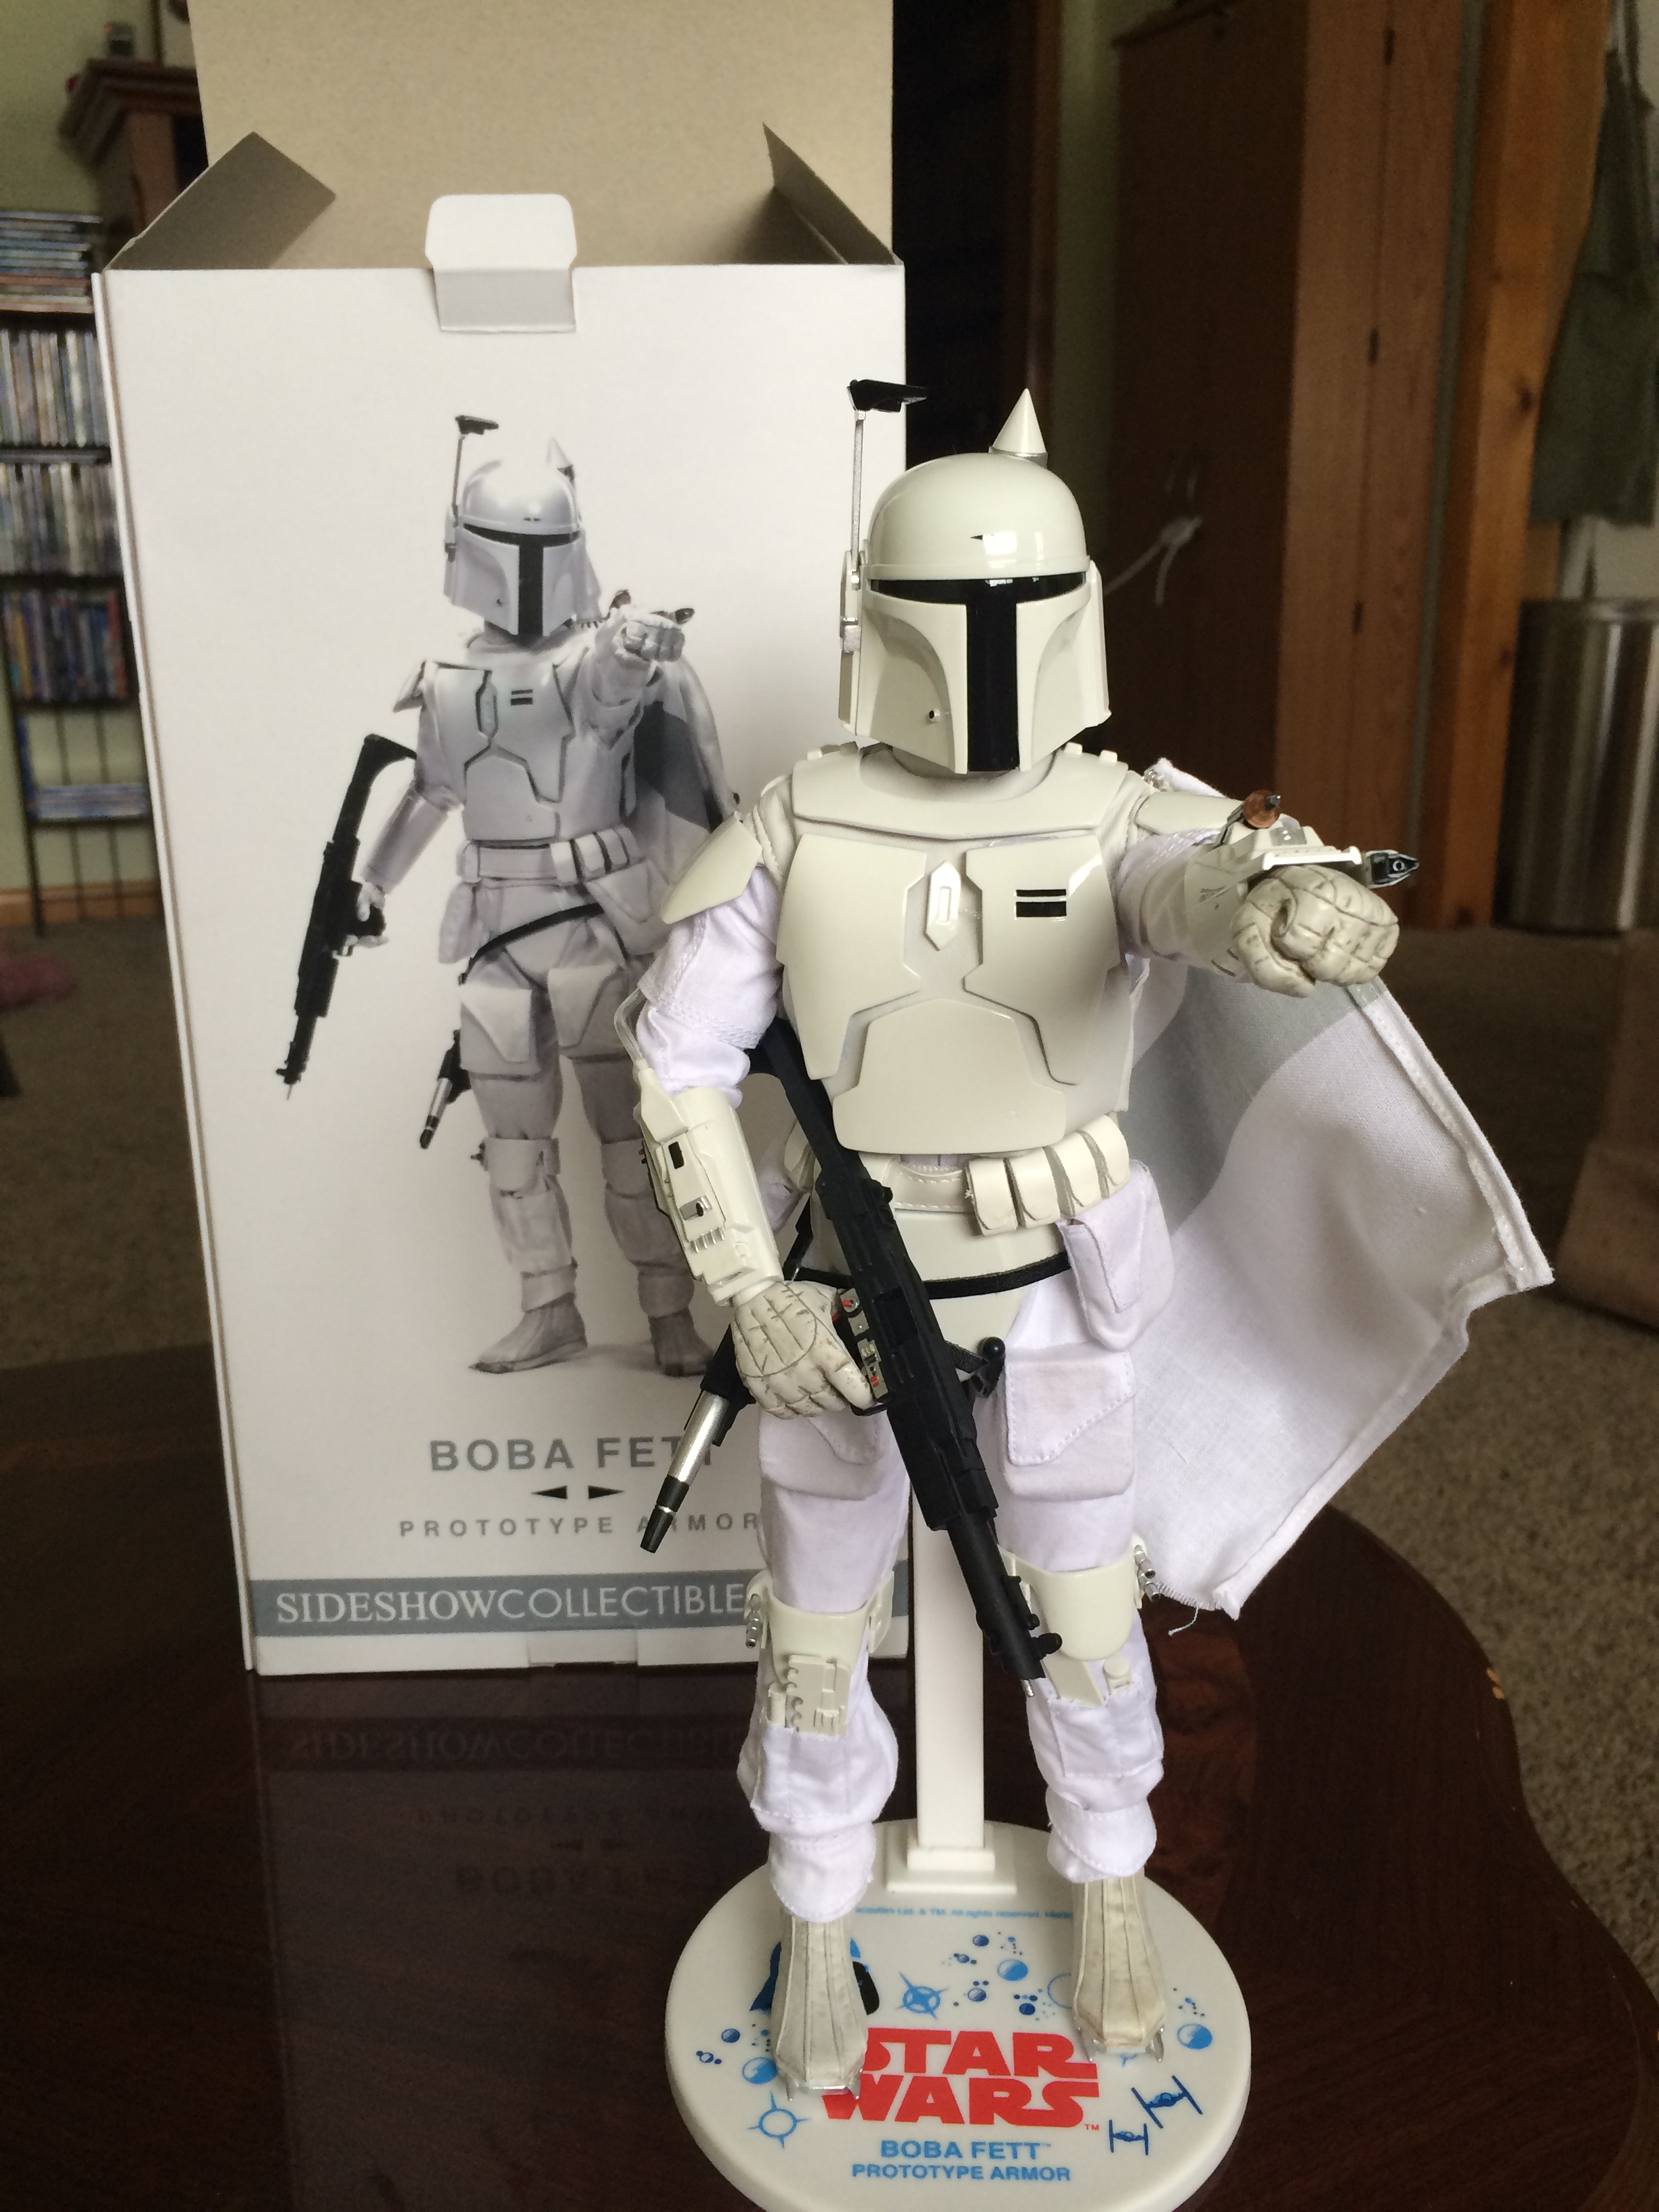 prototype 1 armor